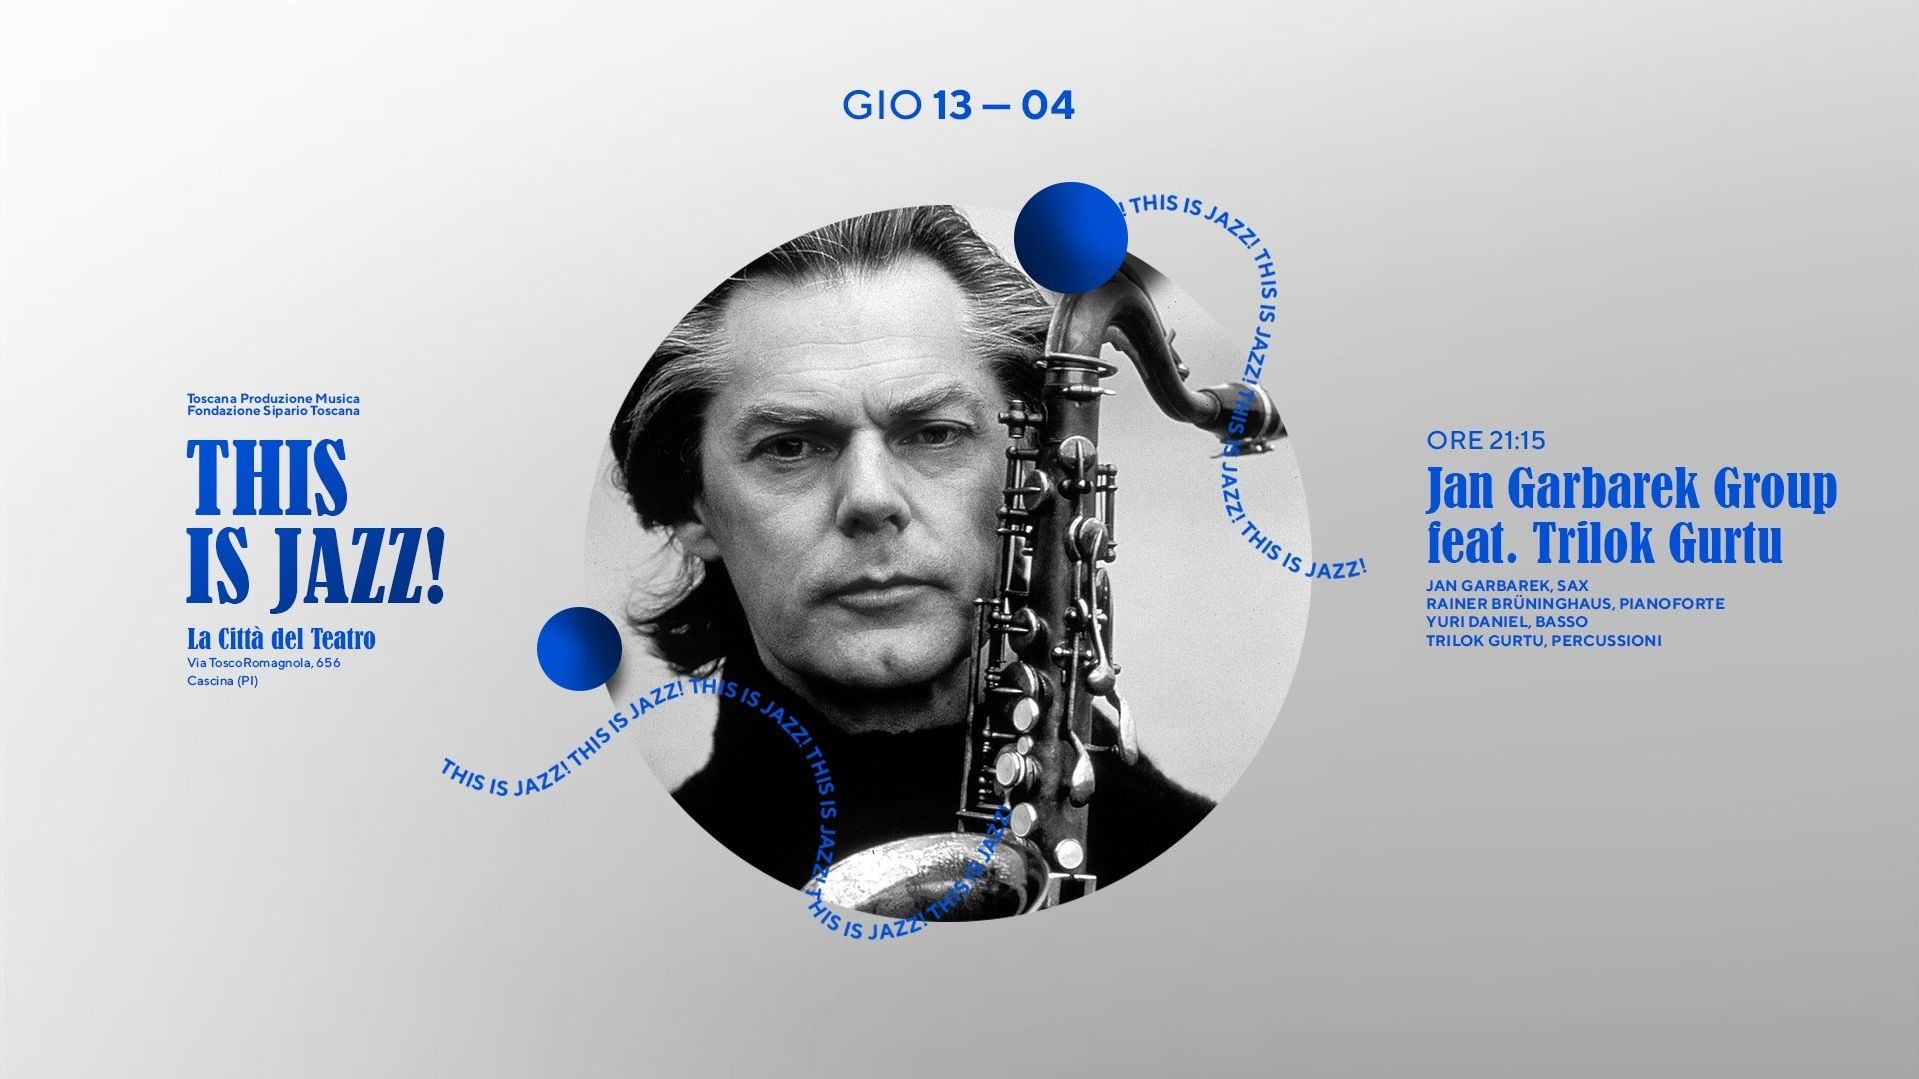 Jan Garbarek Group feat. Trilok Gurtu special guest | This is Jazz!